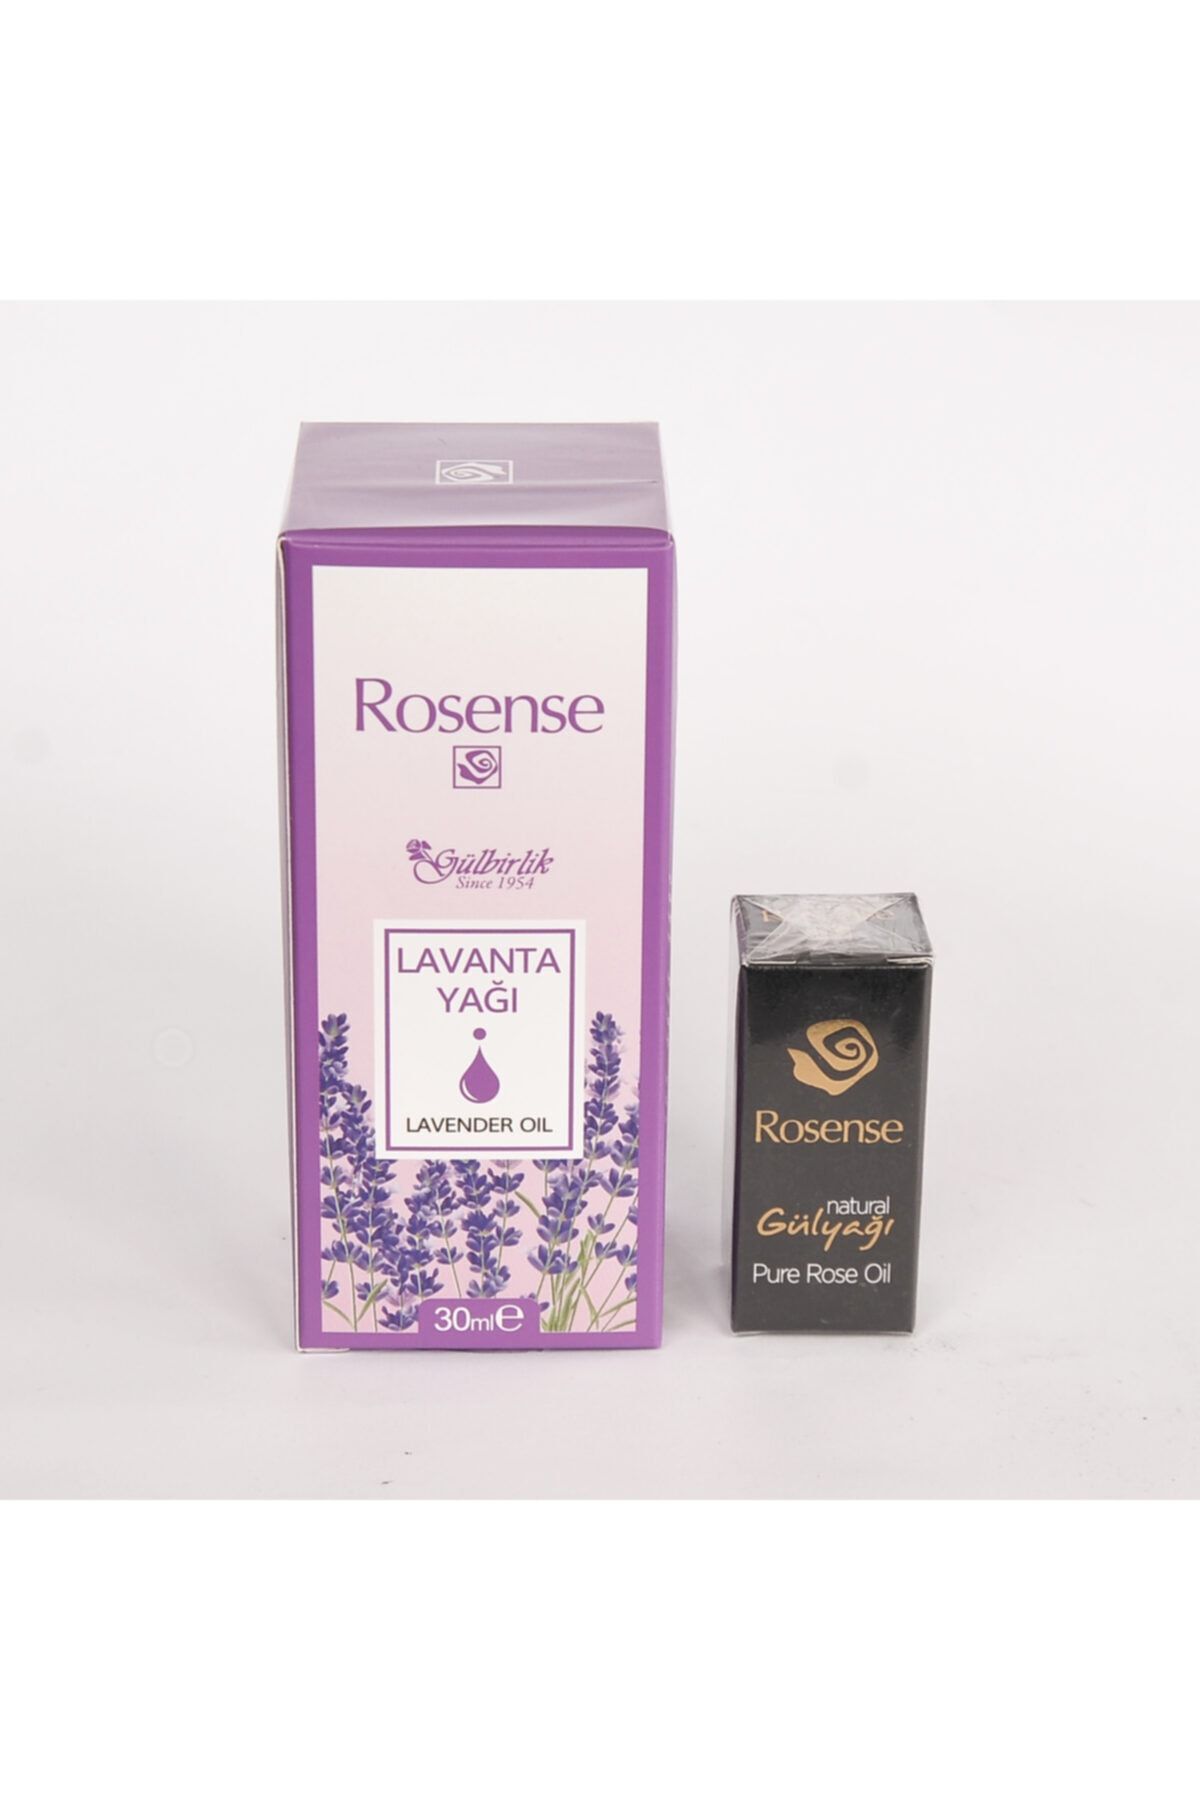 Rosense Lavanta Yağı 30 ml